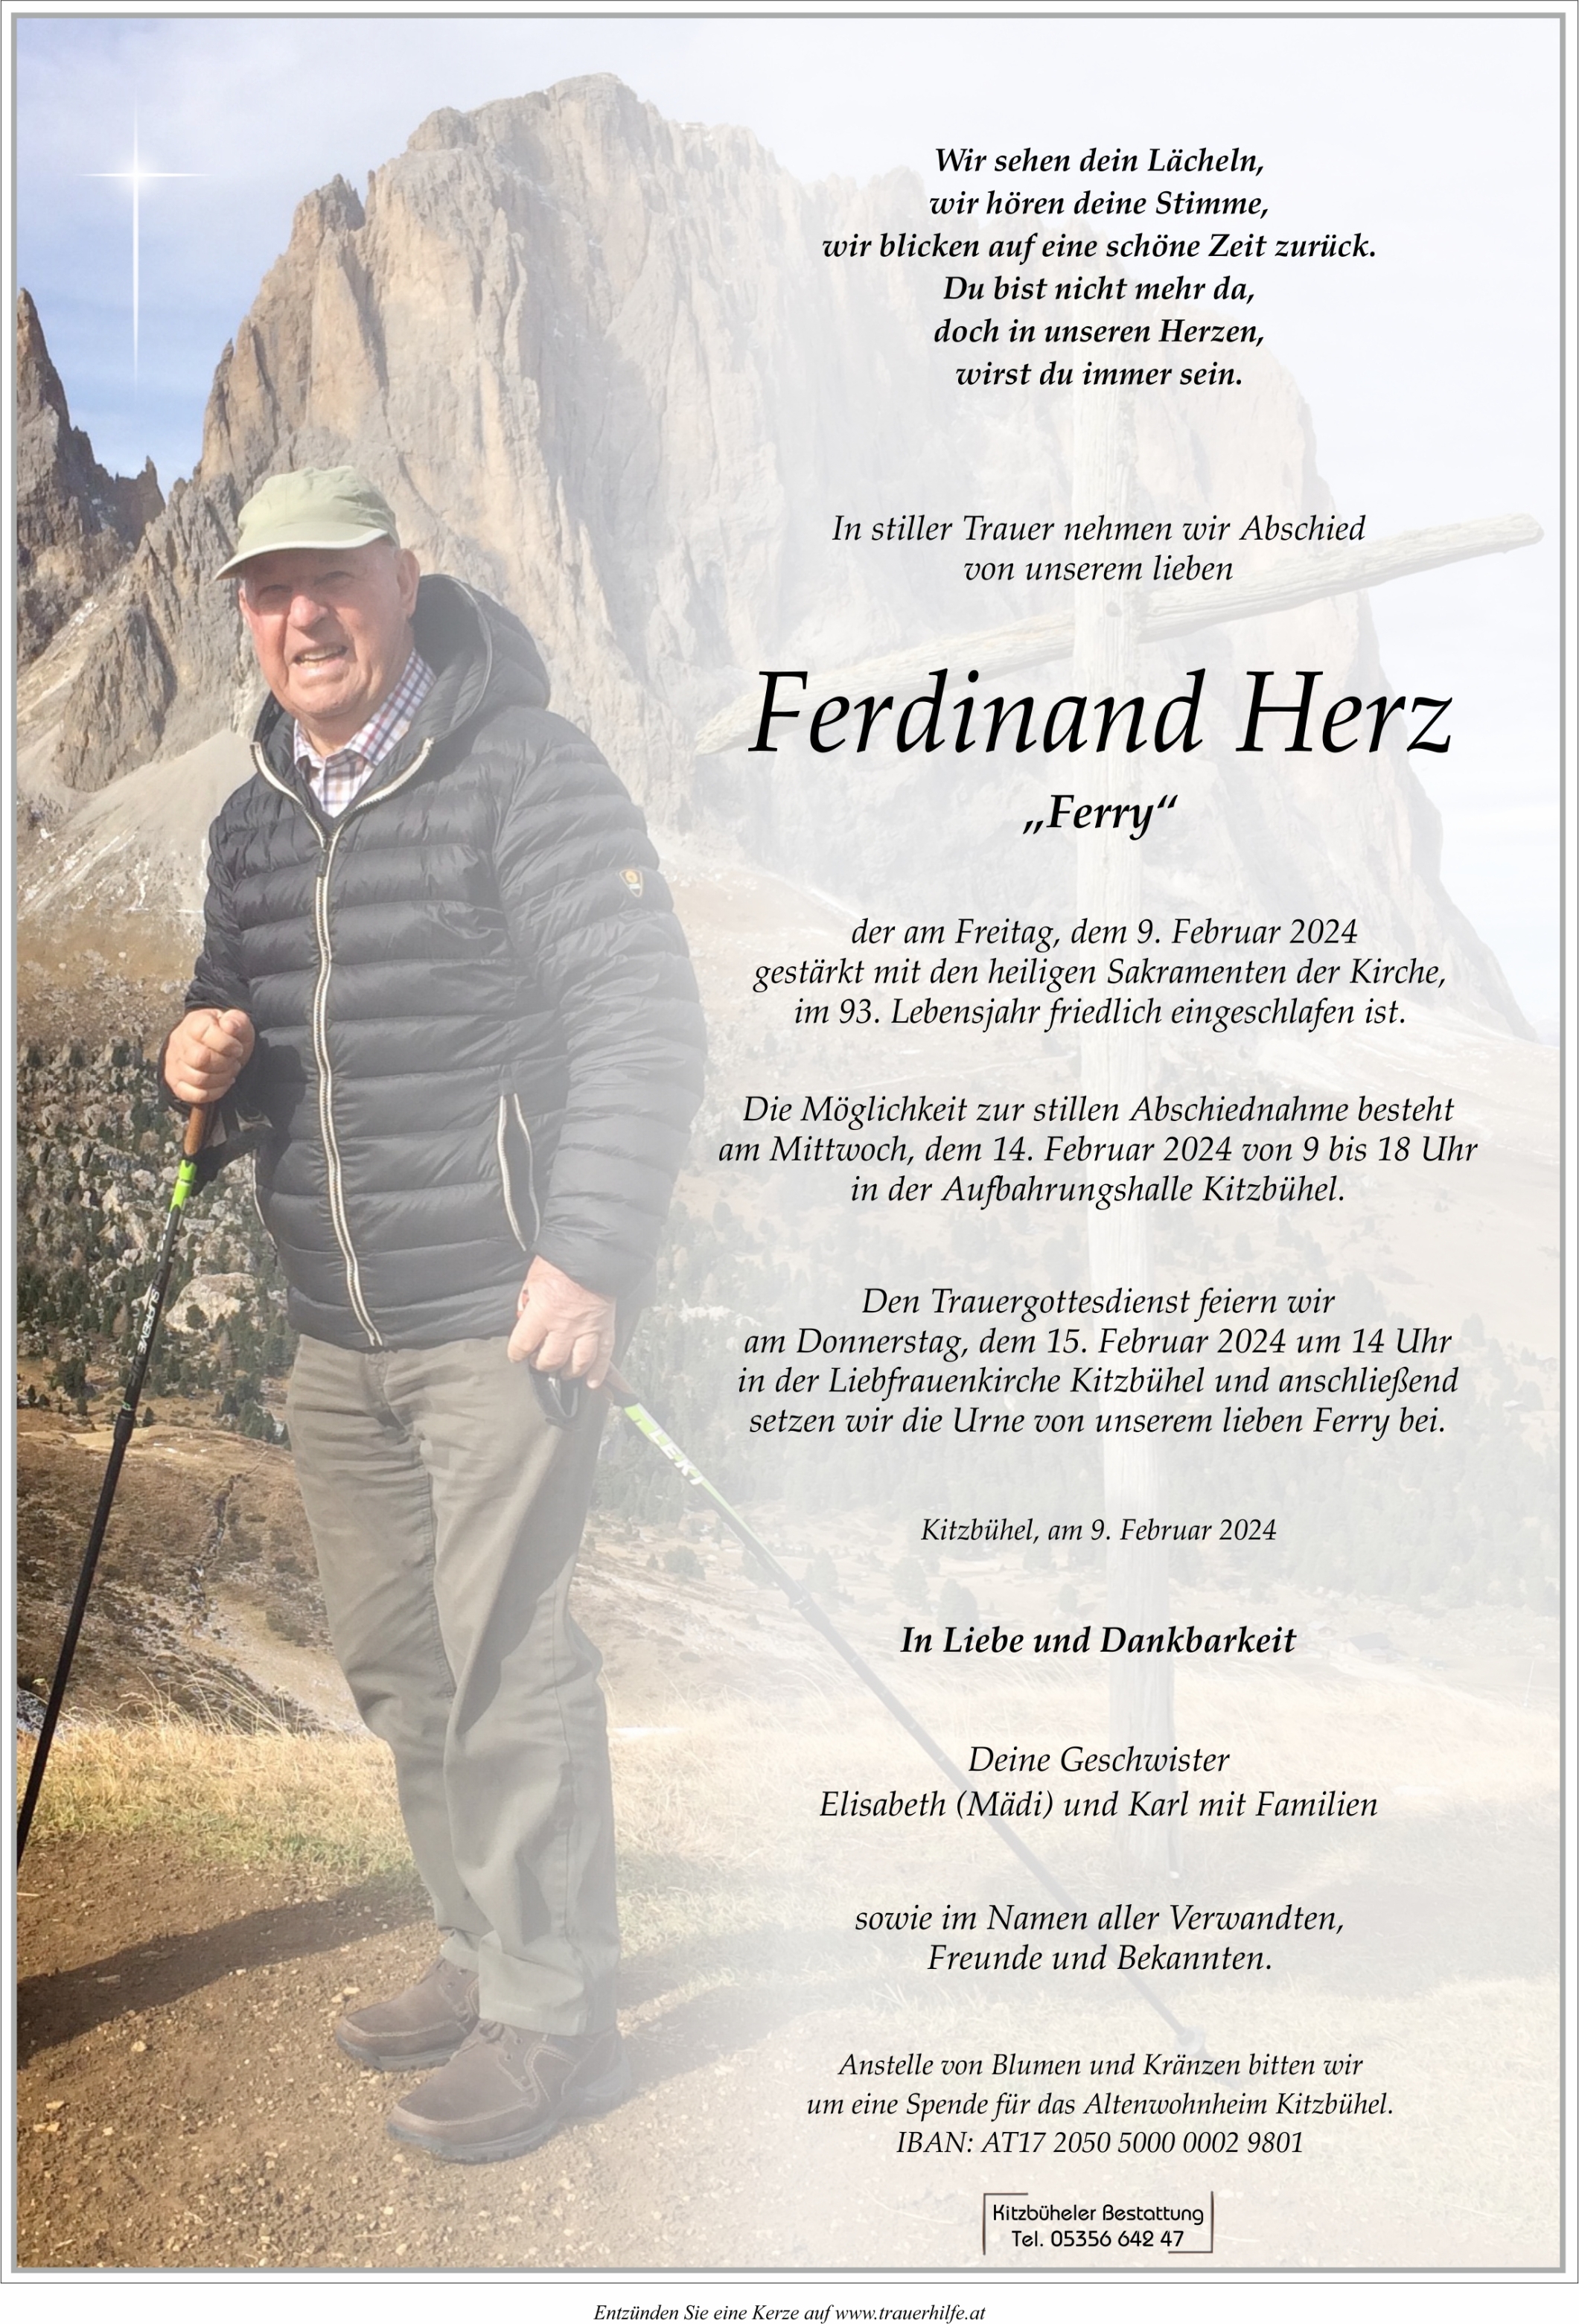 Ferdinand Herz